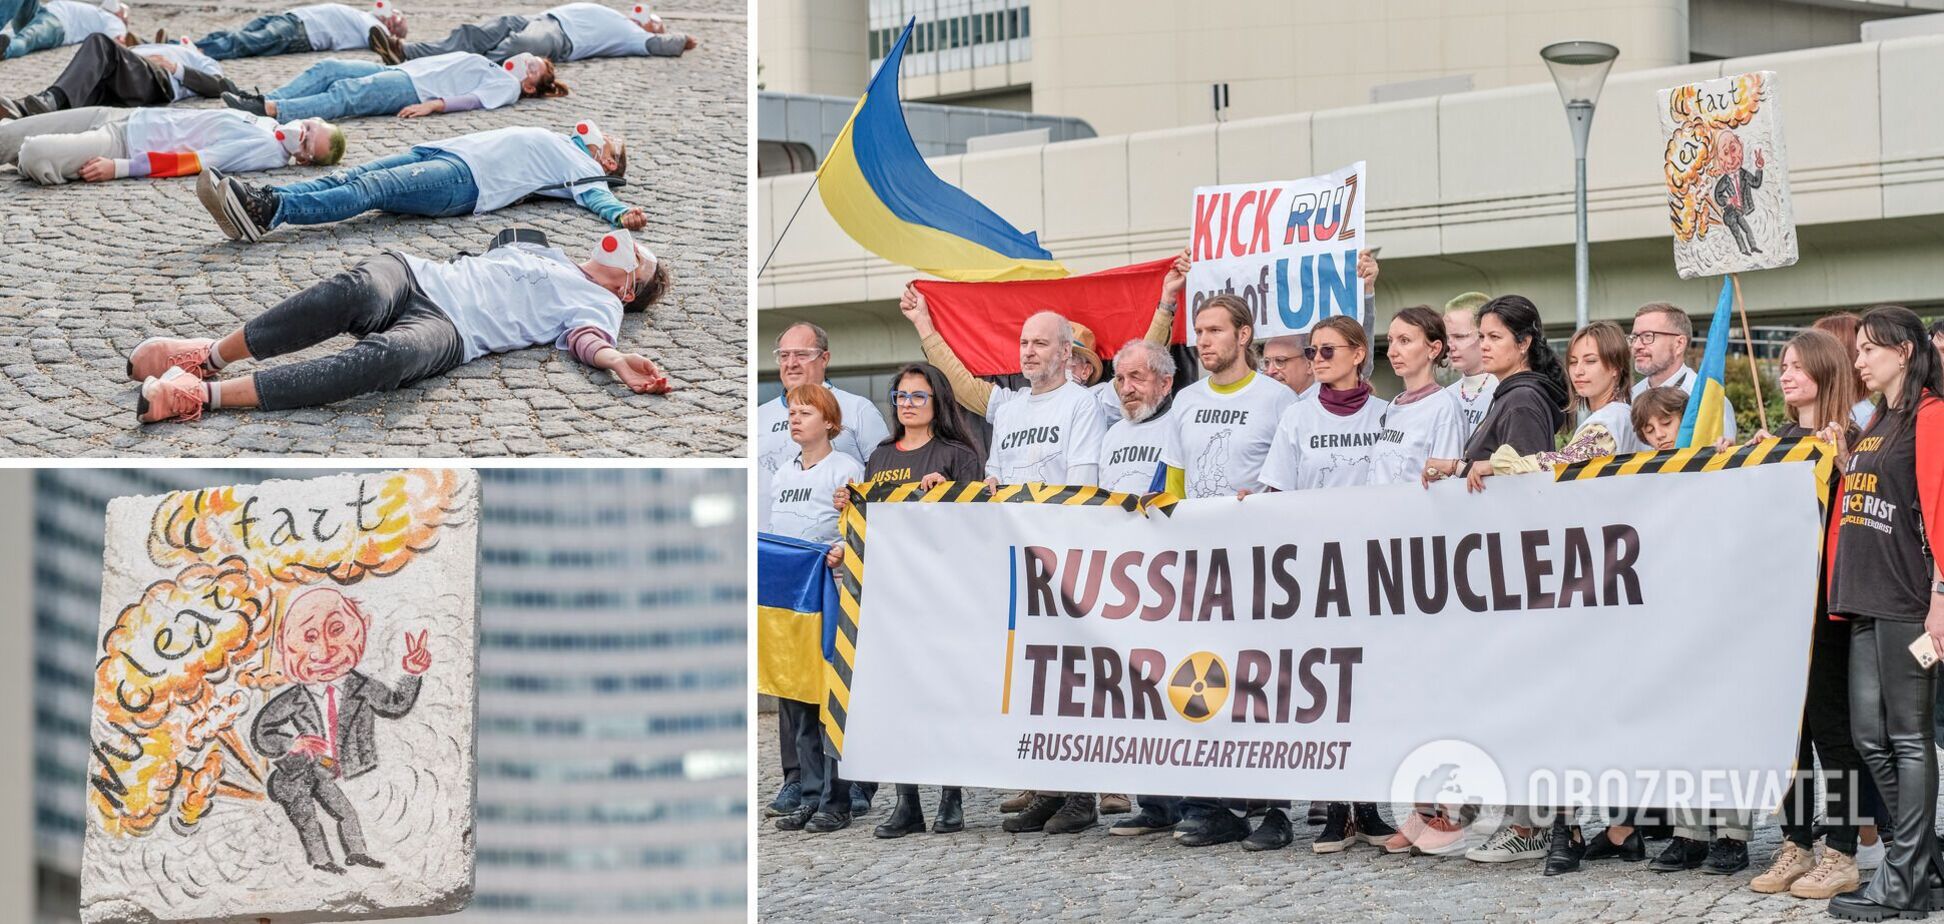 'Покрытые ядерным пеплом': в Вене участники акции против членства России в МАГАТЭ устроили жуткий перформанс. Фото